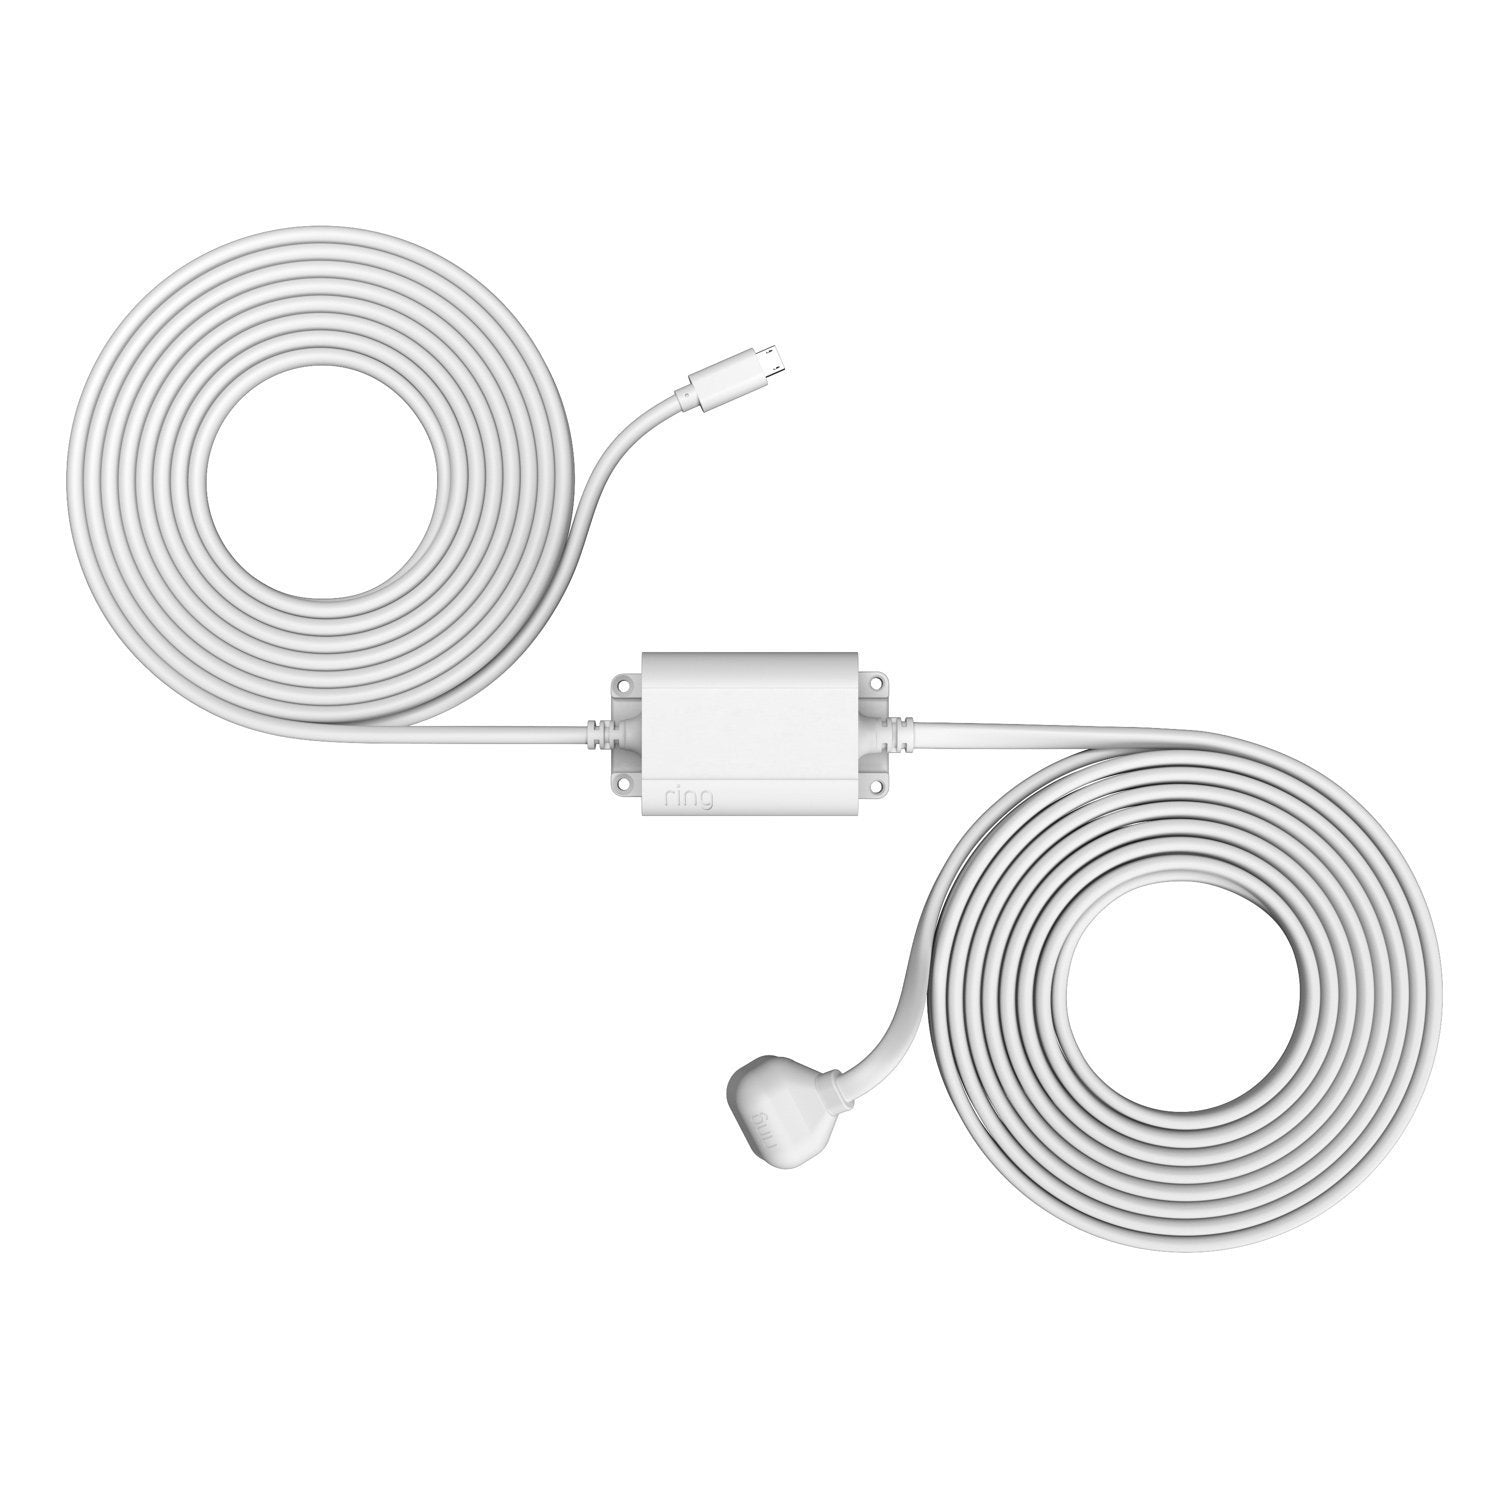 Stick Up Cam Elite with Indoor/Outdoor Power Adapter - Indoor/Outdoor Power Adapter USB-C in white